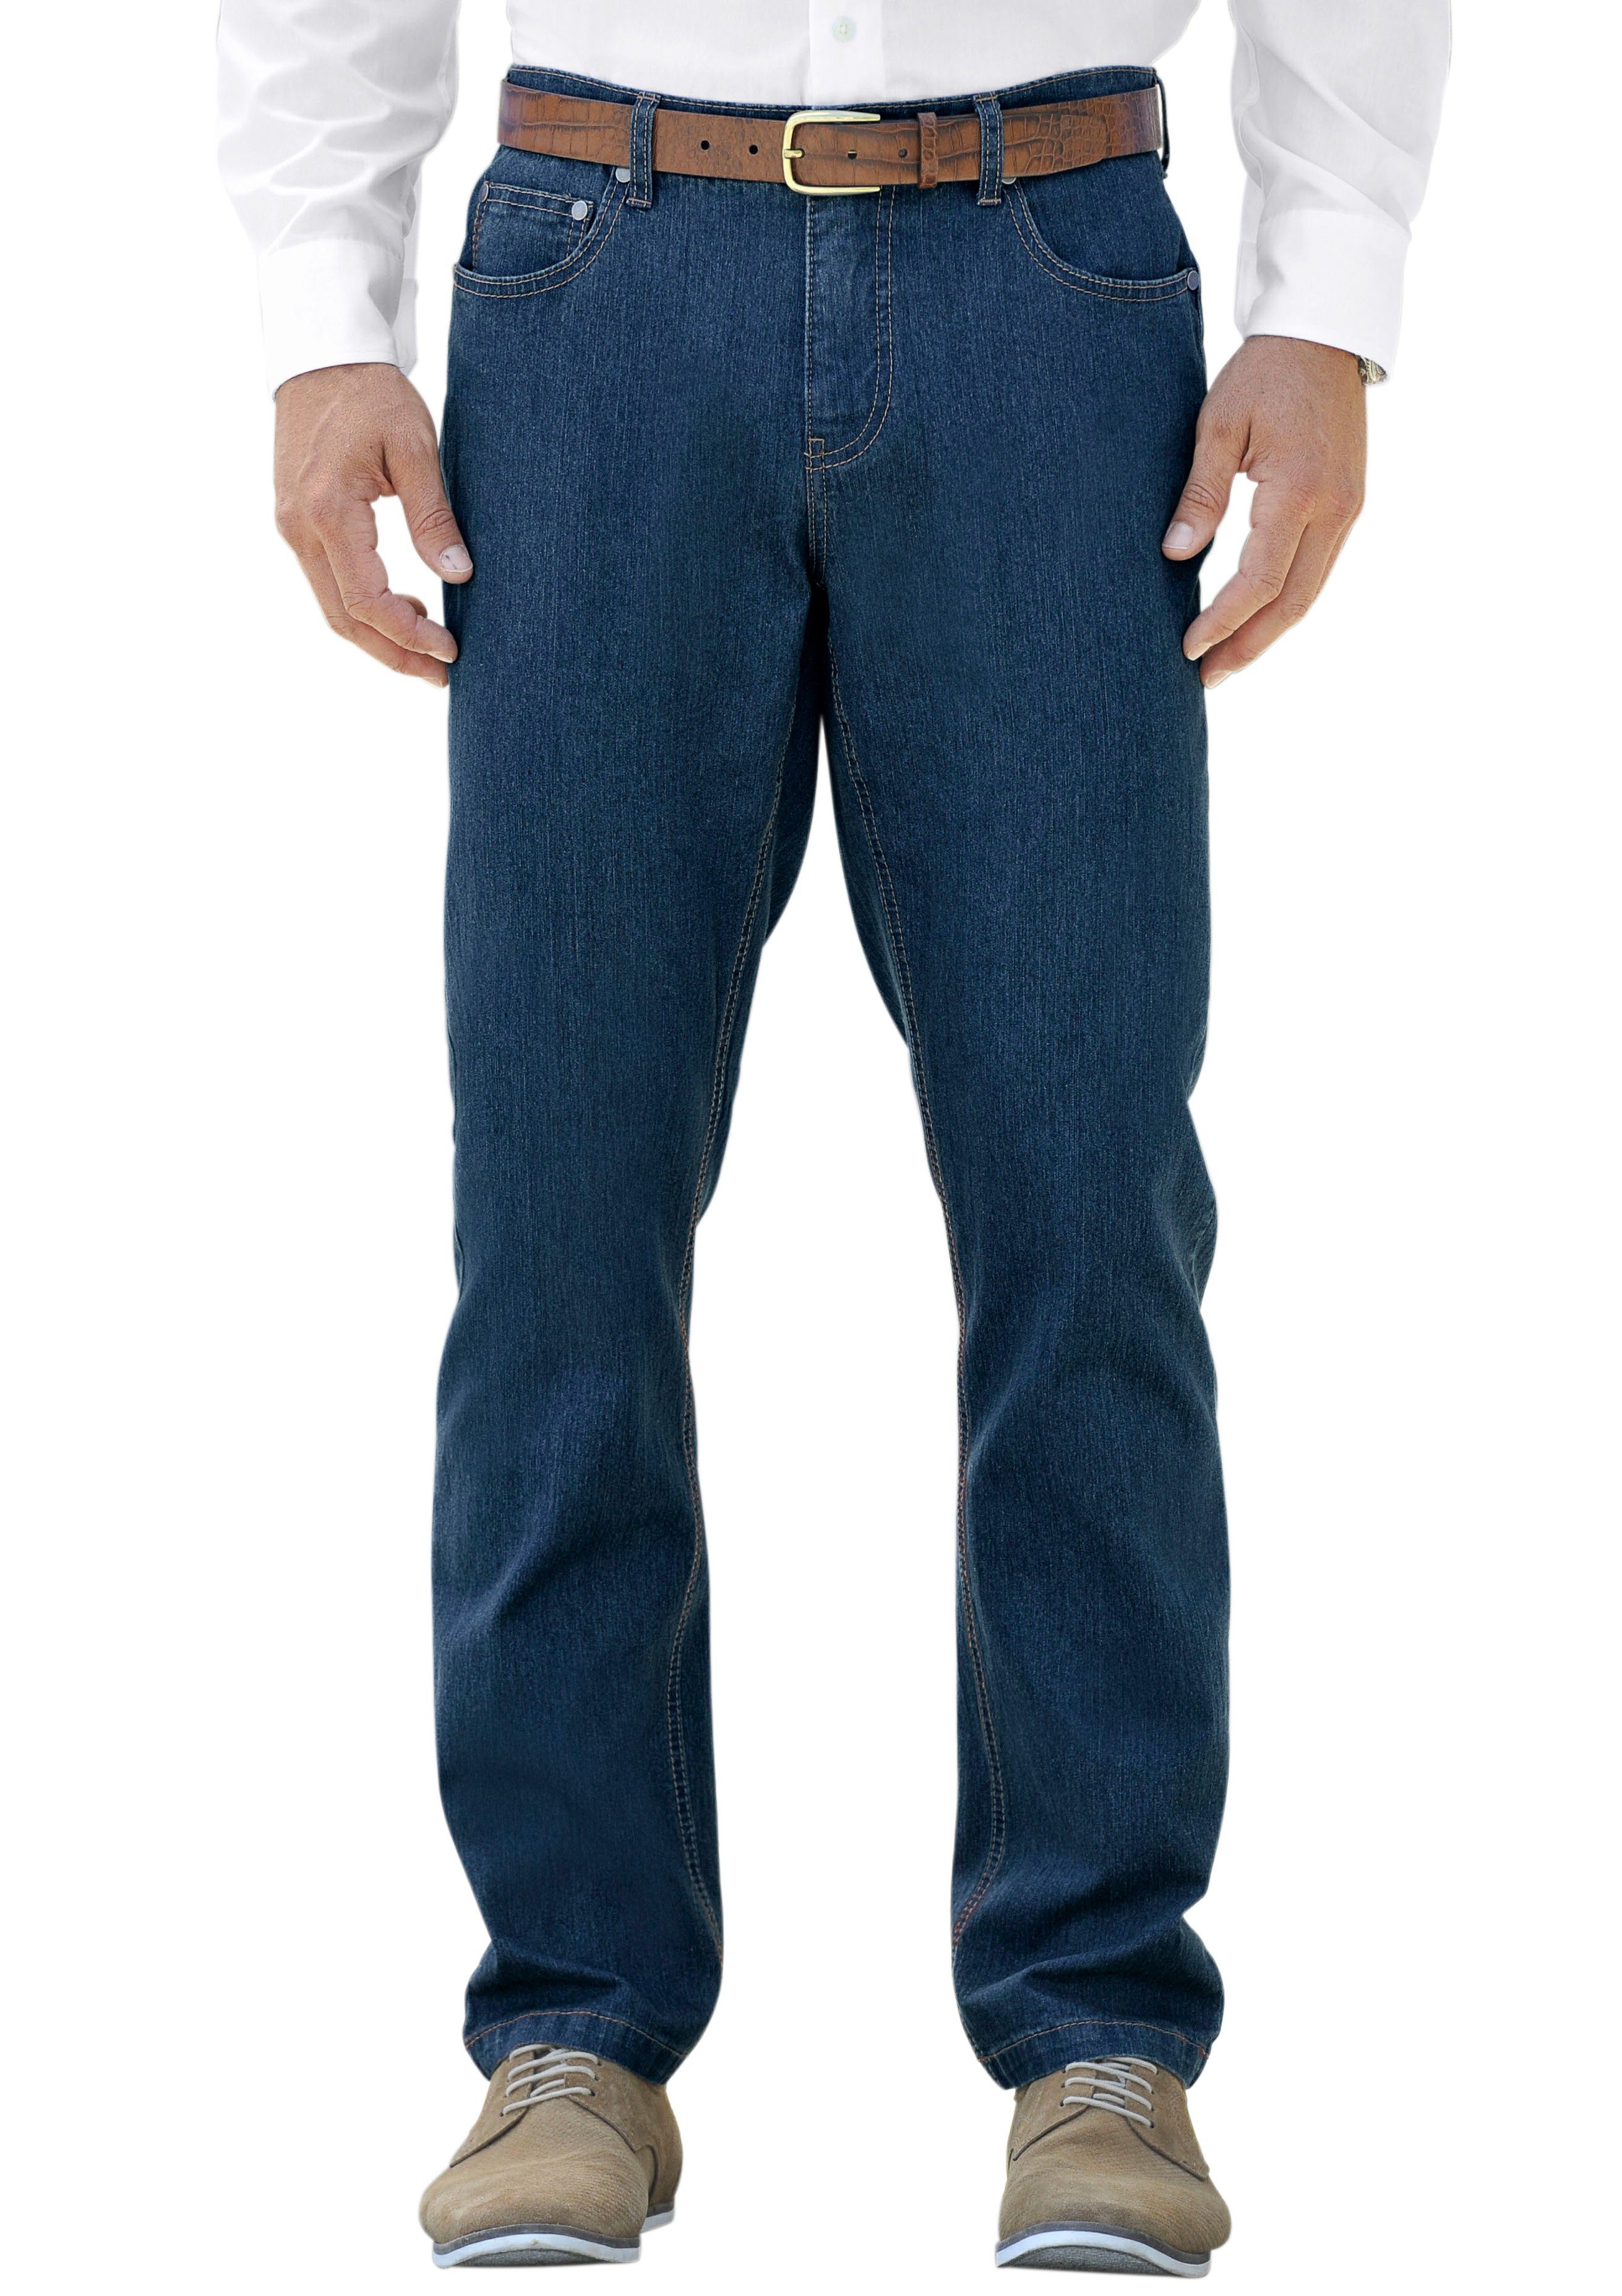 Marco Donati NU 15% KORTING: MARCO DONATI jeans in five-pocketsmodel